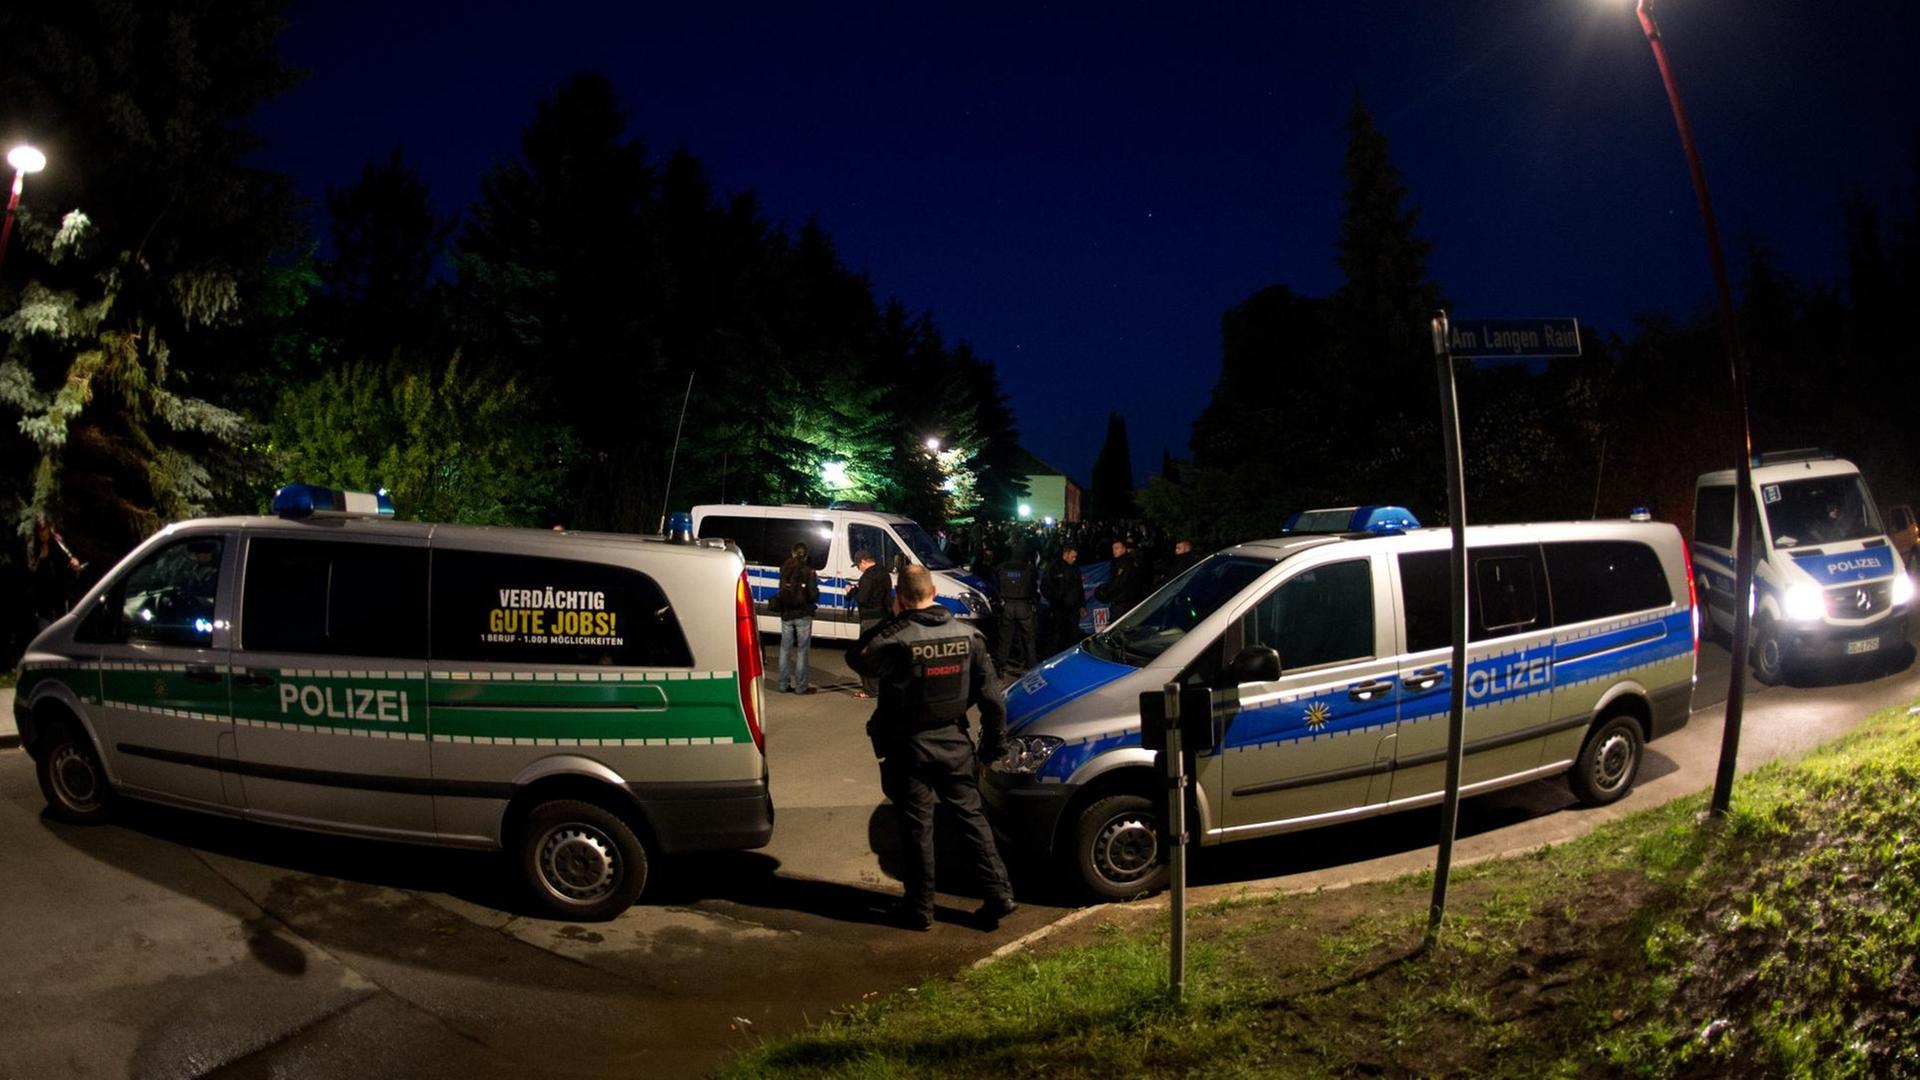 Polizei sichert am 23.06.2015 eine Unterbringung von Asylbewerbern (Leonardo-Hotel) in Freital (Sachsen).